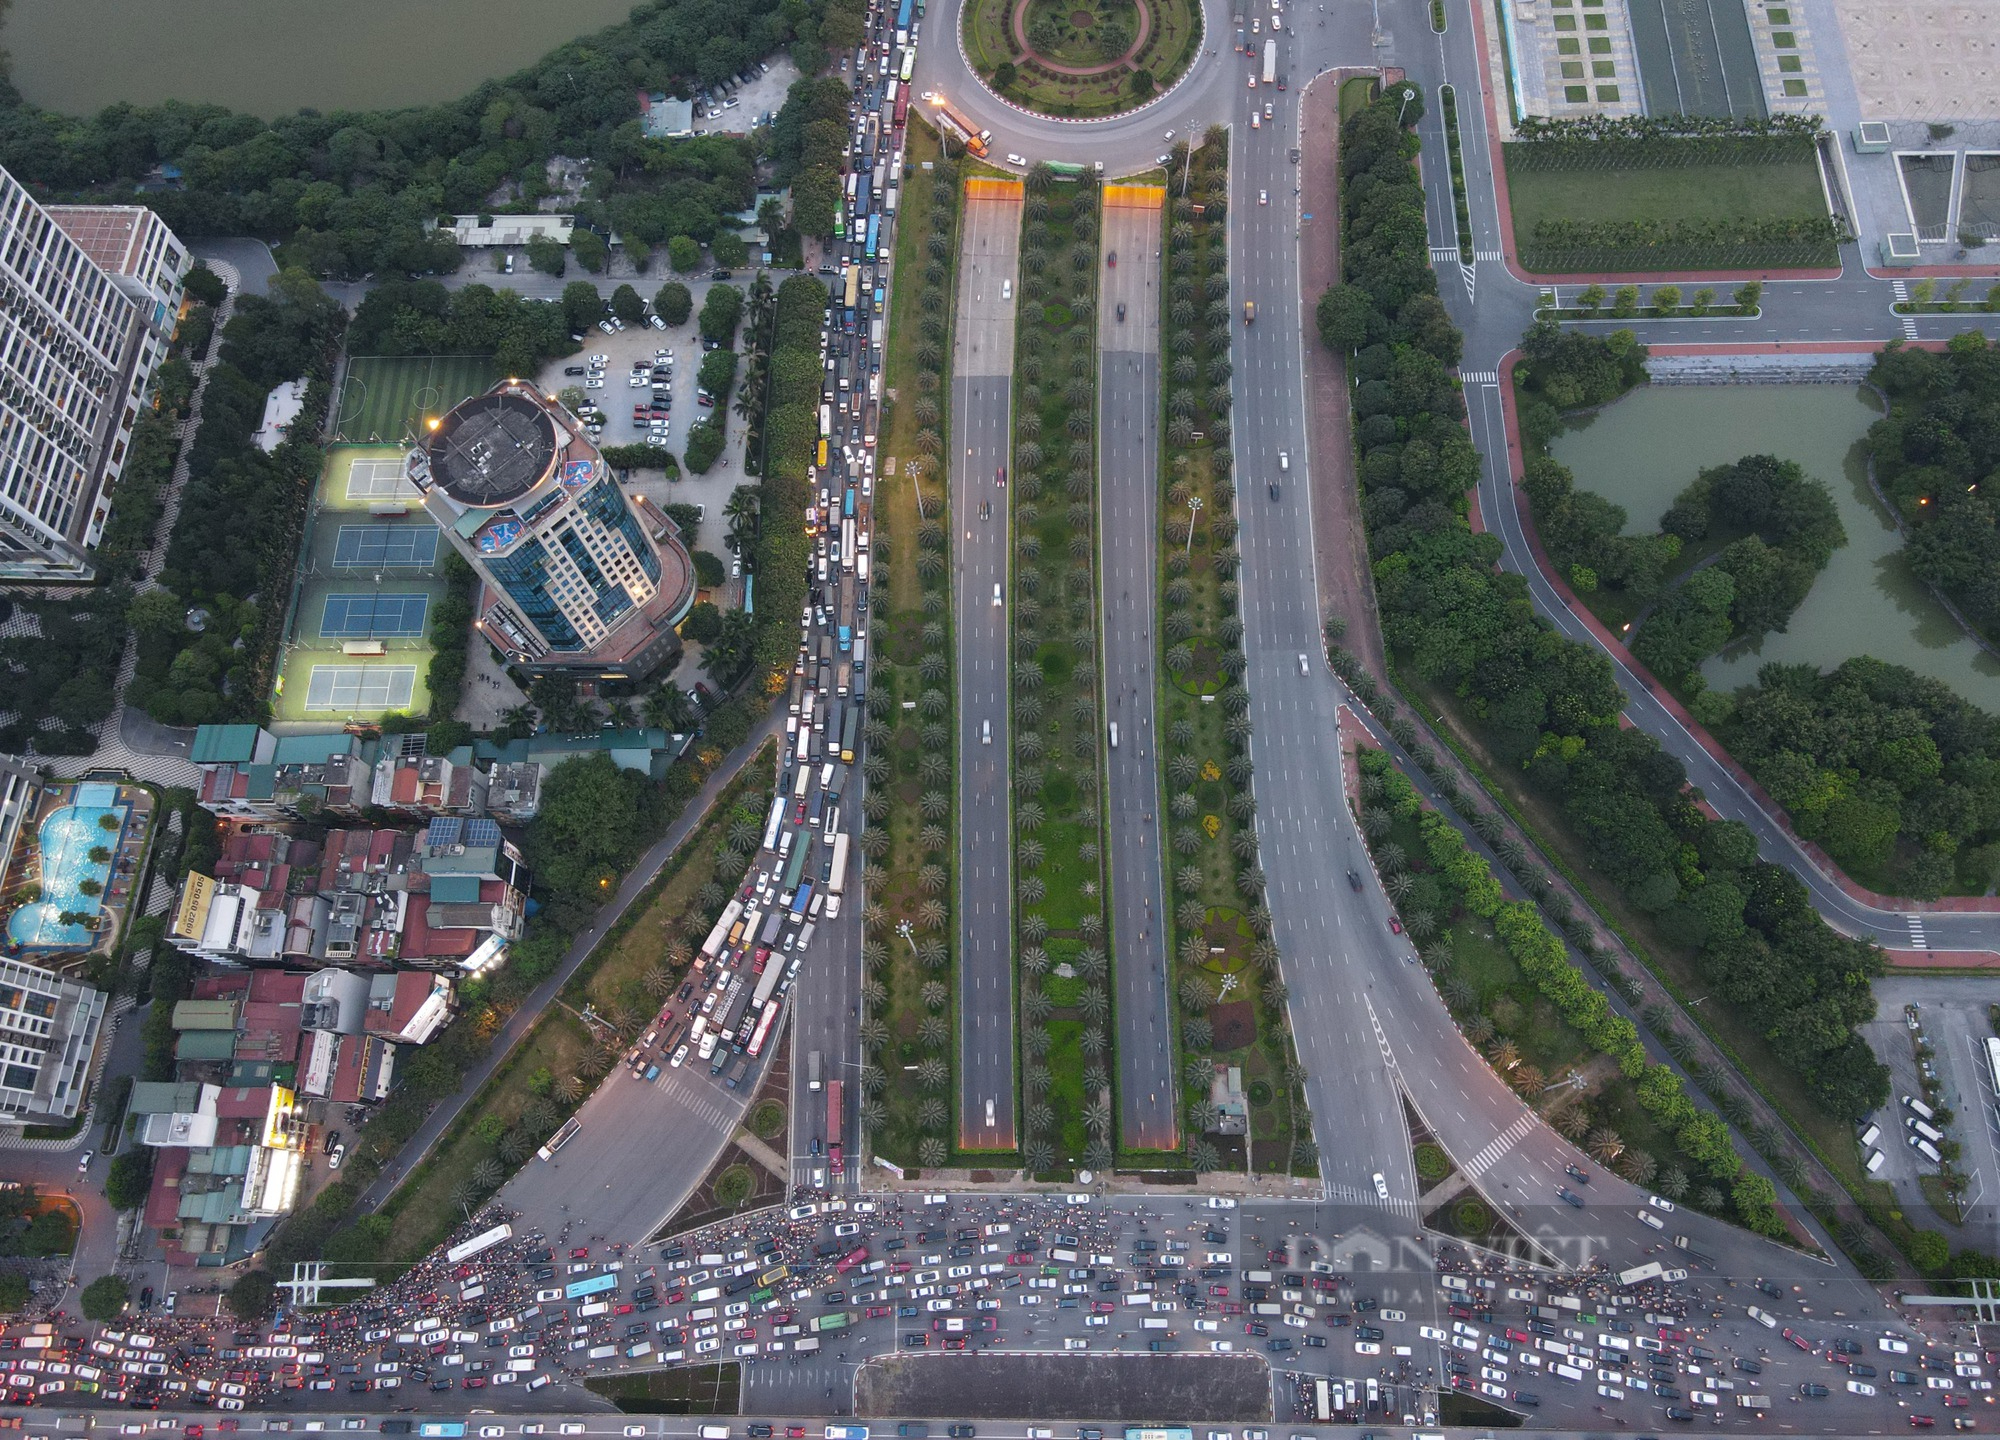 Hà Nội: Ùn tắc kinh hoàng tại nút giao Đại lộ Thăng Long - Vành đai 3 trên cao - Ảnh 6.